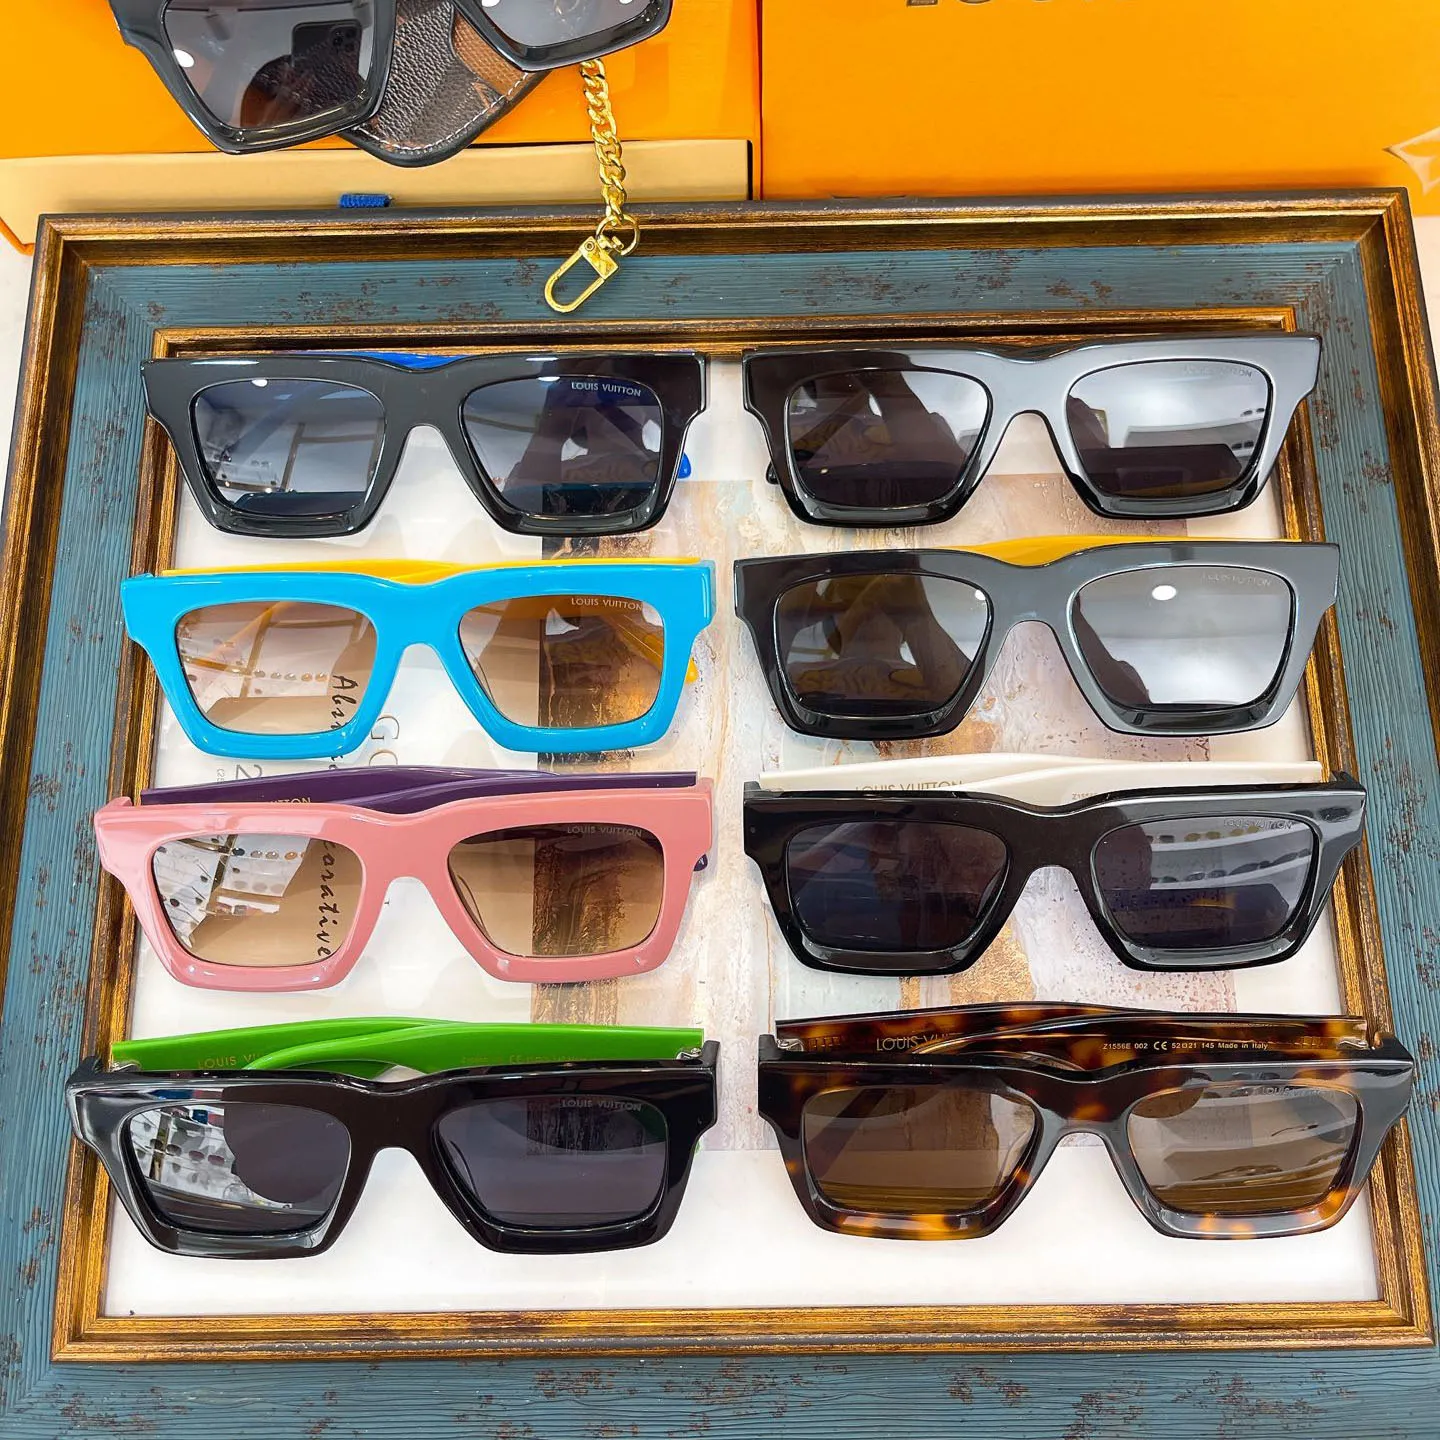 Дизайнерские мужские солнцезащитные очки женские солнцезащитные очки модные солнцезащитные очки эстетическая тенденция окрашенные солнцезащитные очки парижские модные солнцезащитные очки солнцезащитные очки